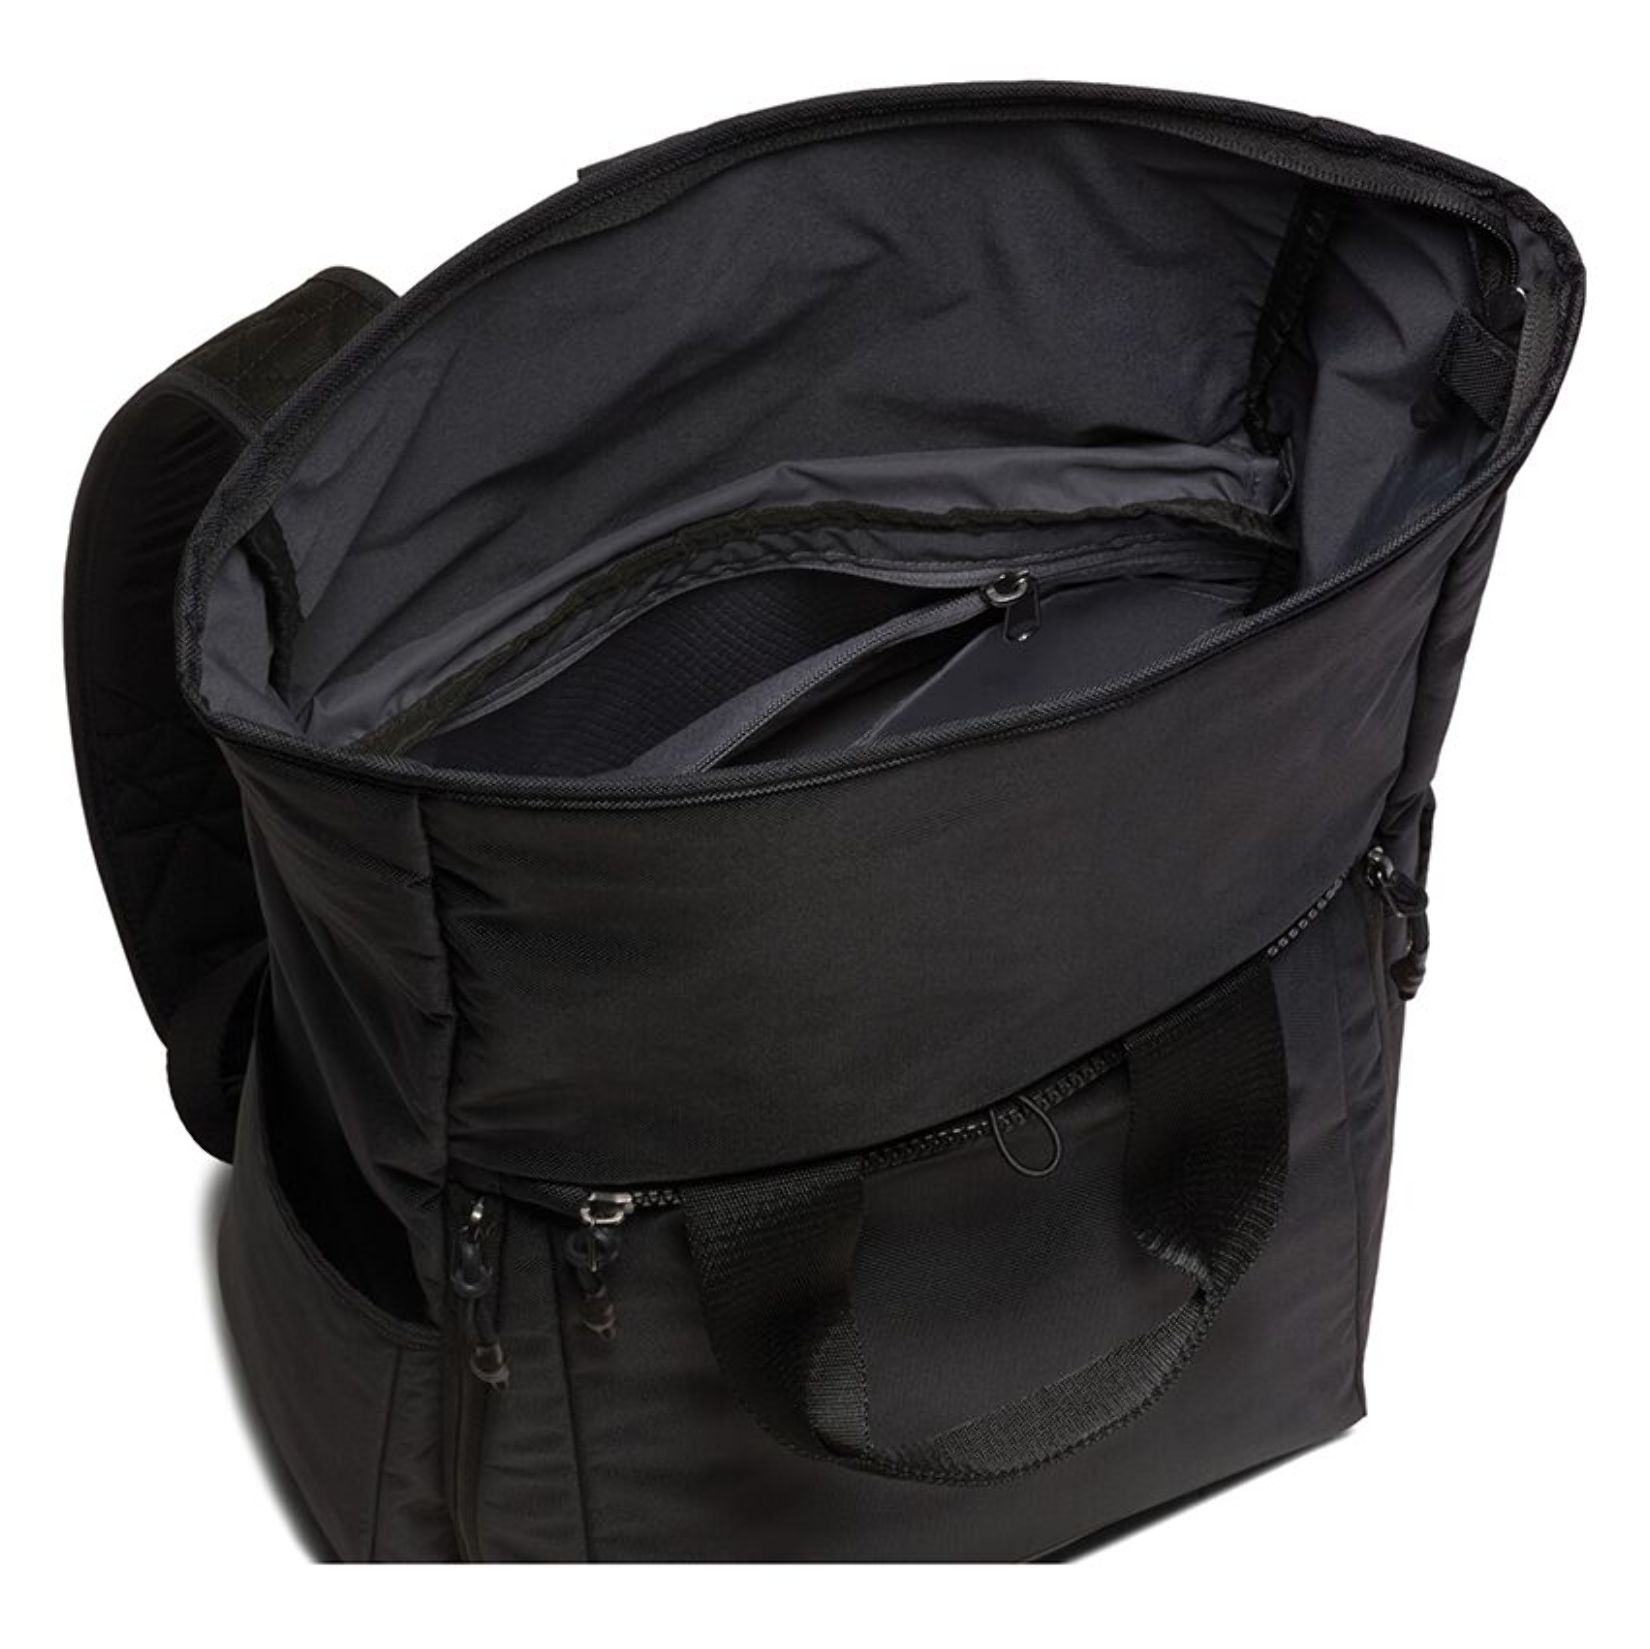 nike vapor backpack 2.0